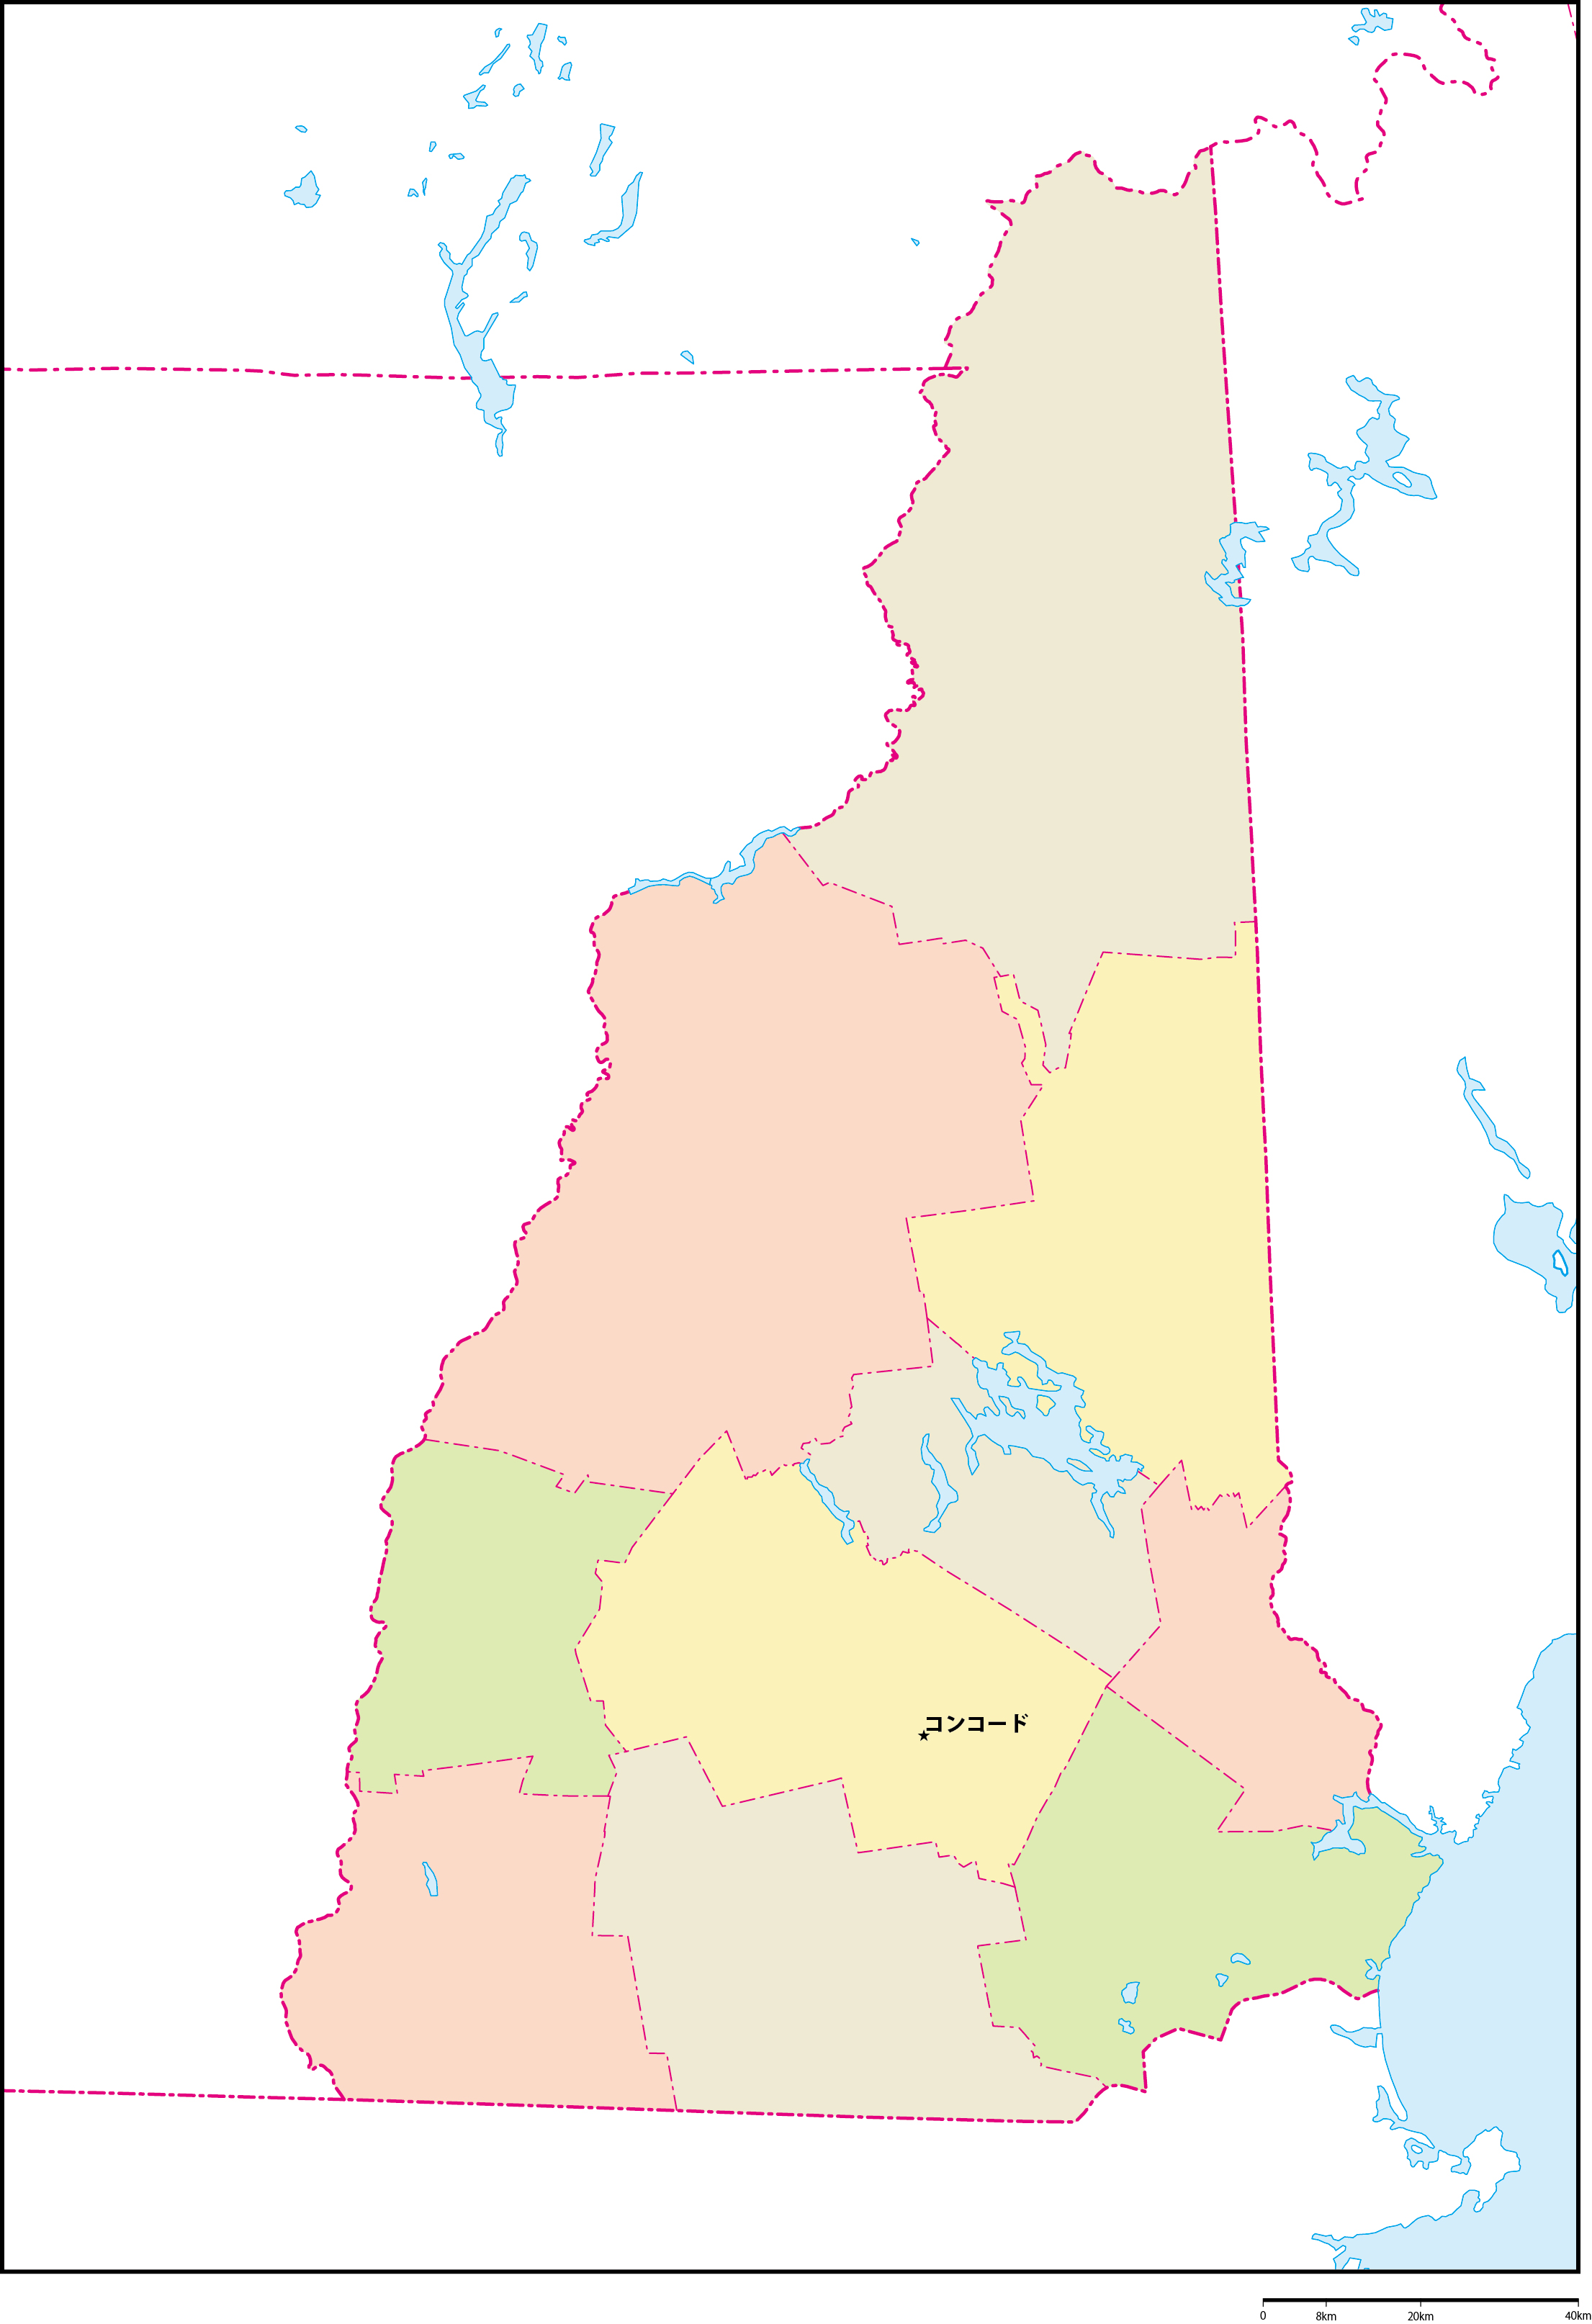 ニューハンプシャー州郡色分け地図州都あり(日本語)フリーデータの画像